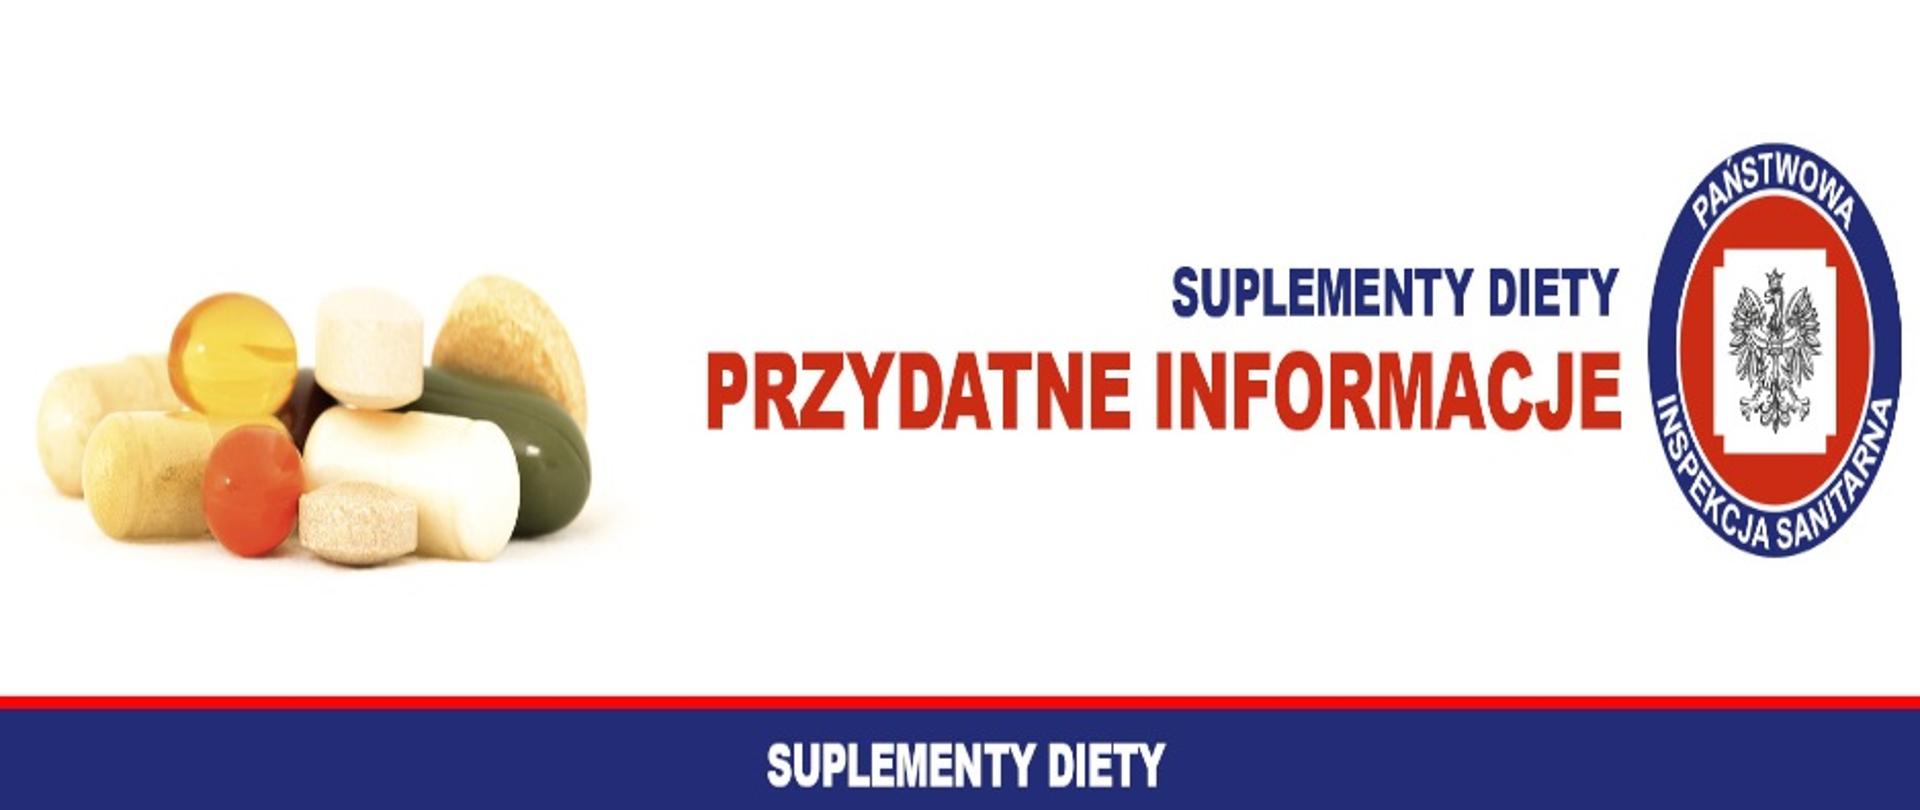 Po lewej stronie baneru widzimy zestaw rożnych tabletek( suplentów), po prawej widzimy tekst: " suplementy diety, przydatne informacje" oraz logo Państwowej Inspekcji Sanitarnej.